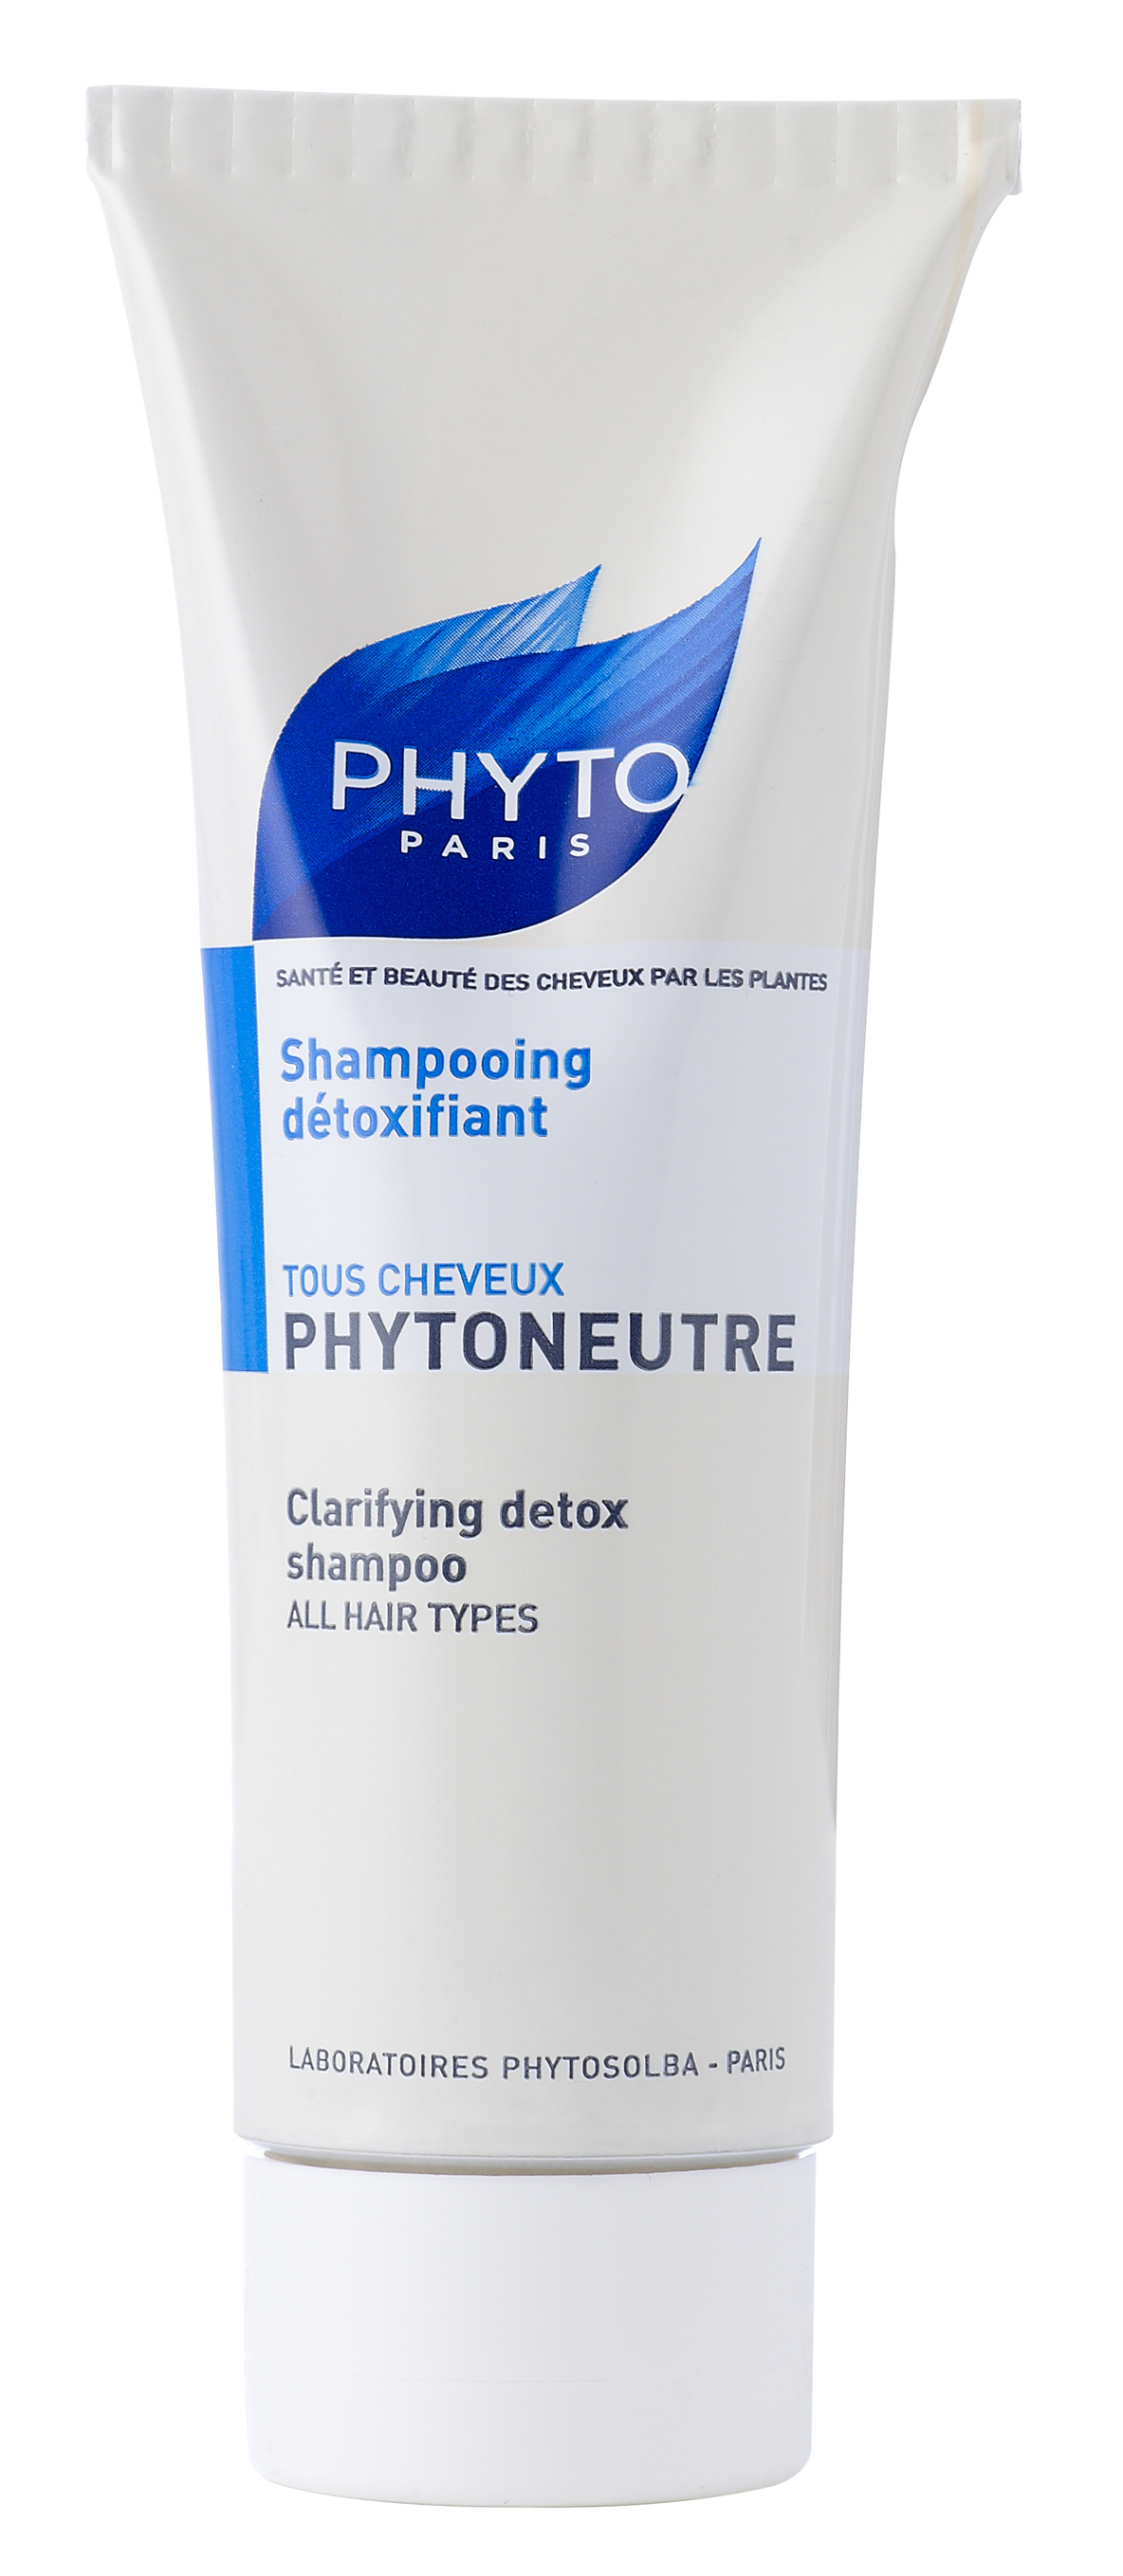 Phyto shampoo